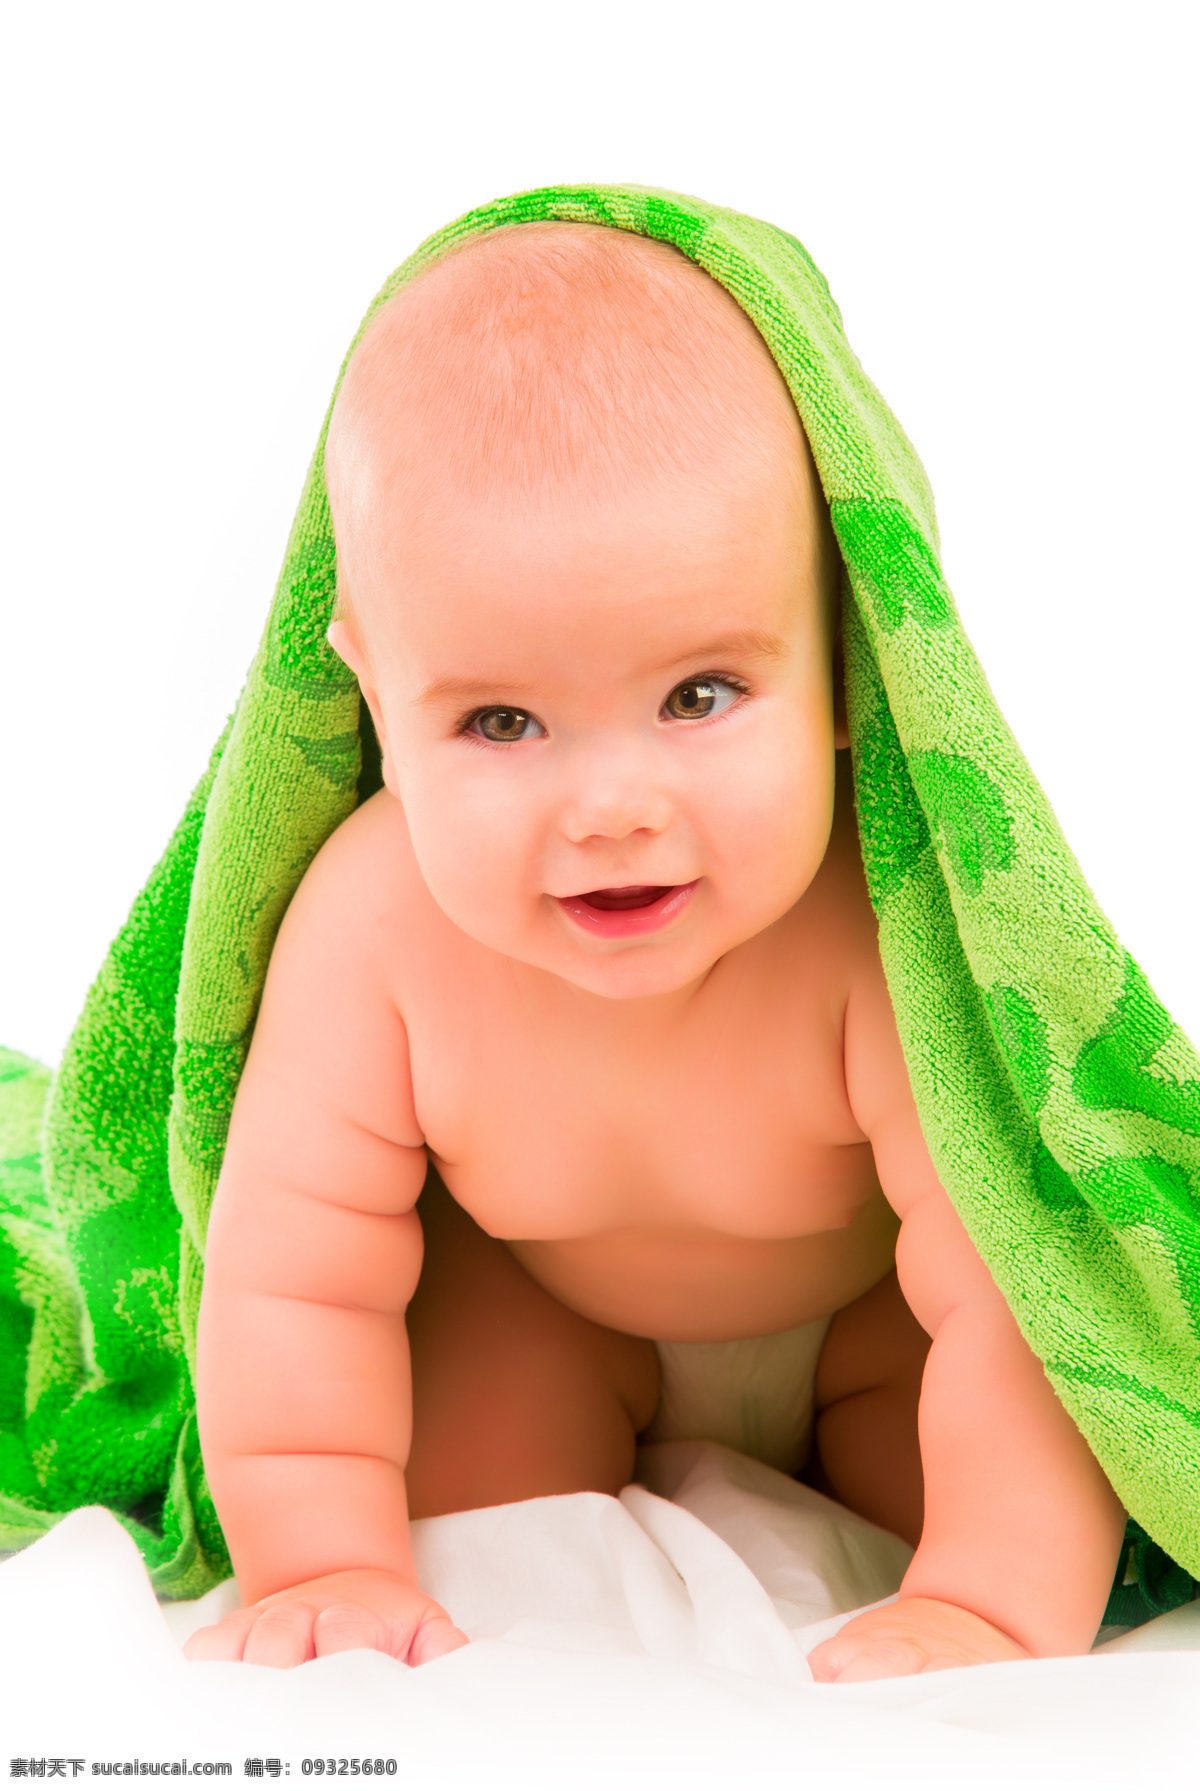 披 毛毯 肥 嘟嘟 可爱 男婴 婴儿 肥嘟嘟 微笑 儿童图片 人物图片